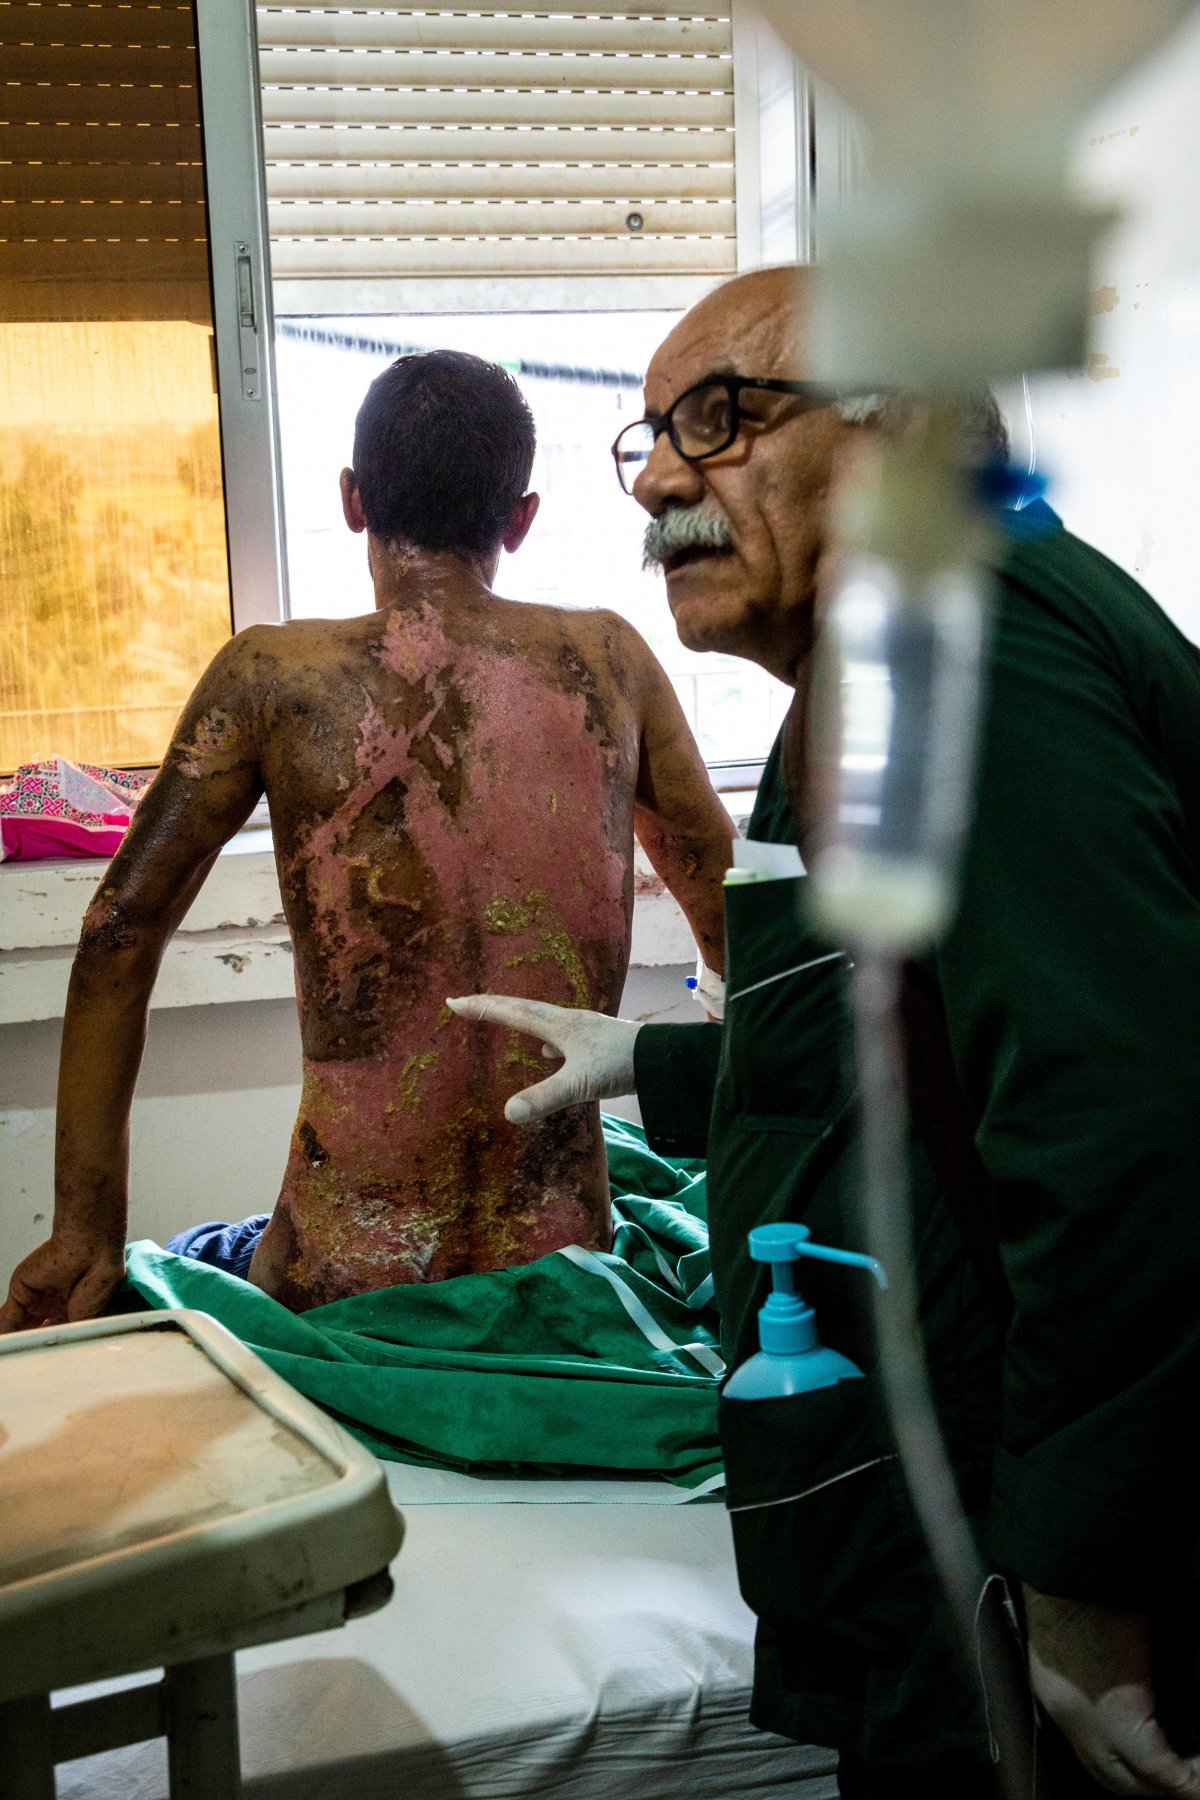 syria war doctor hospital injured